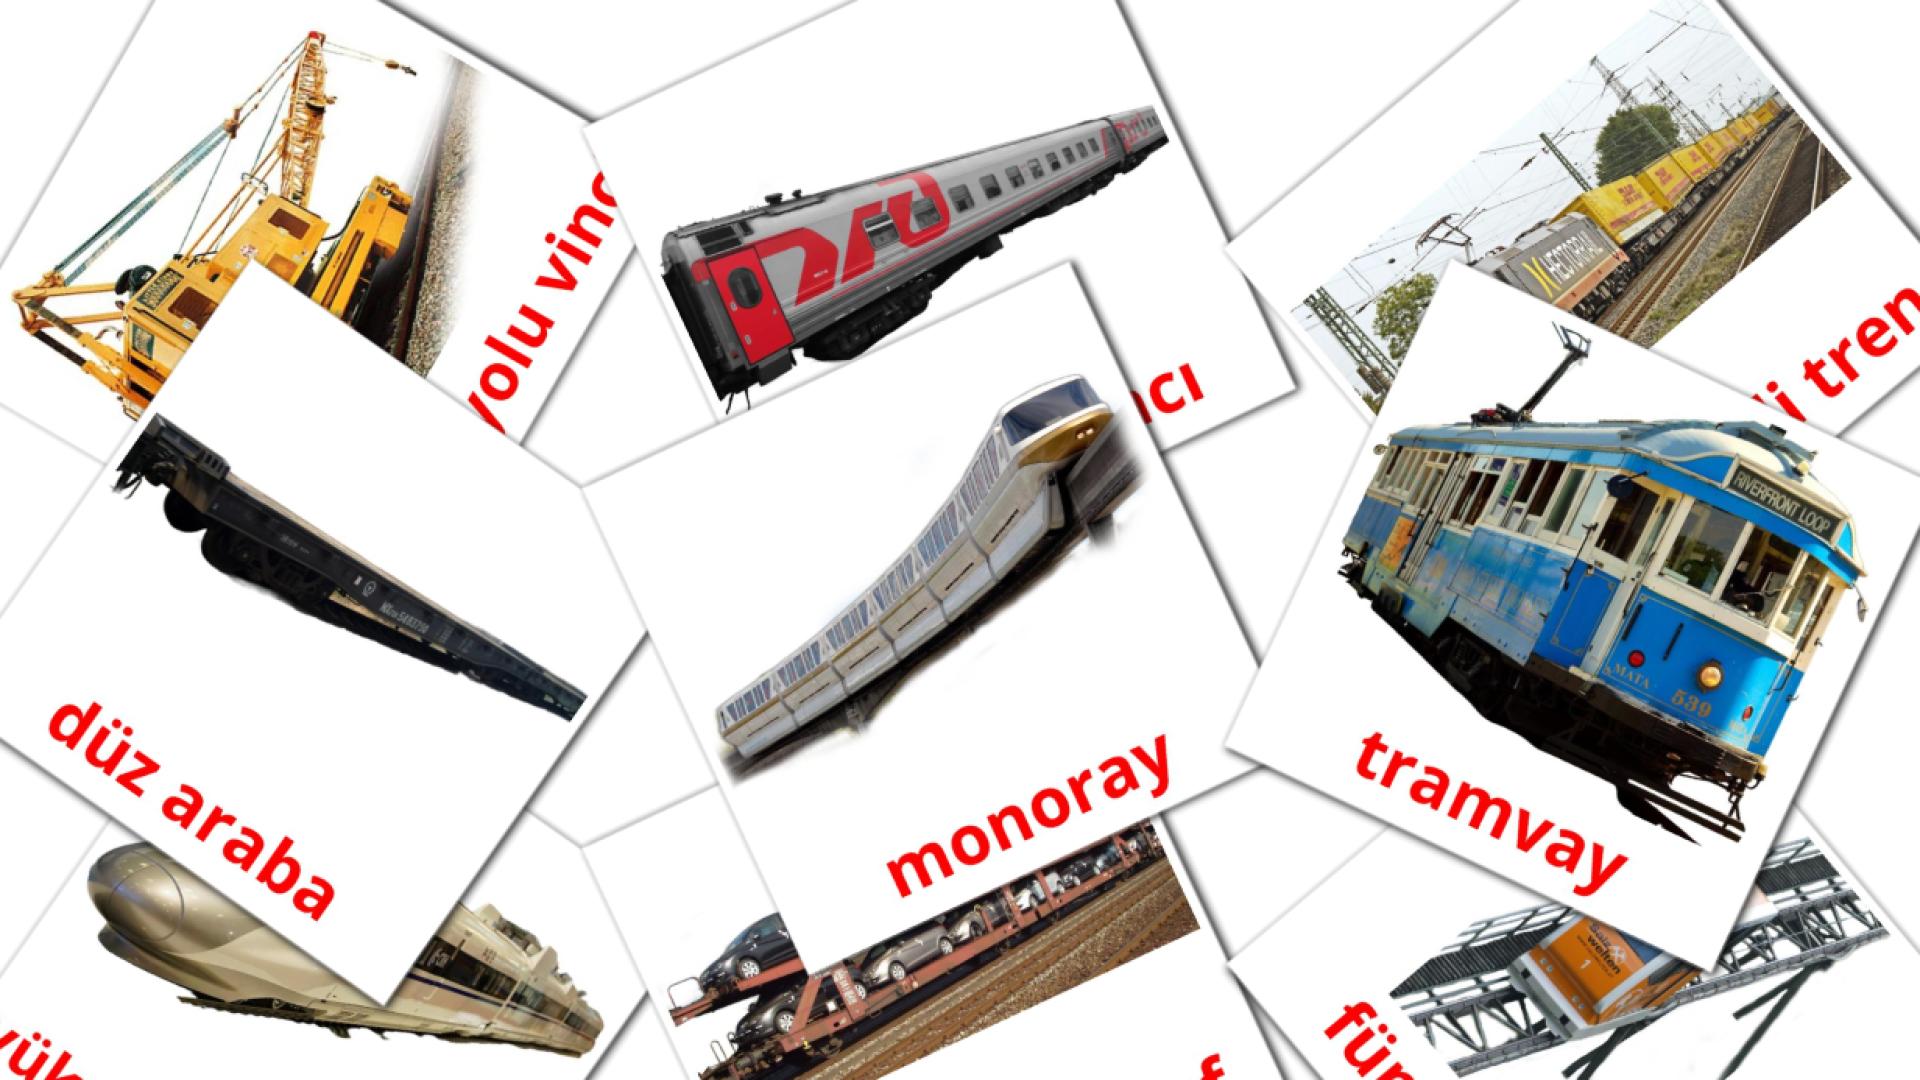 18 Imagiers demiryolu taşımacılığı